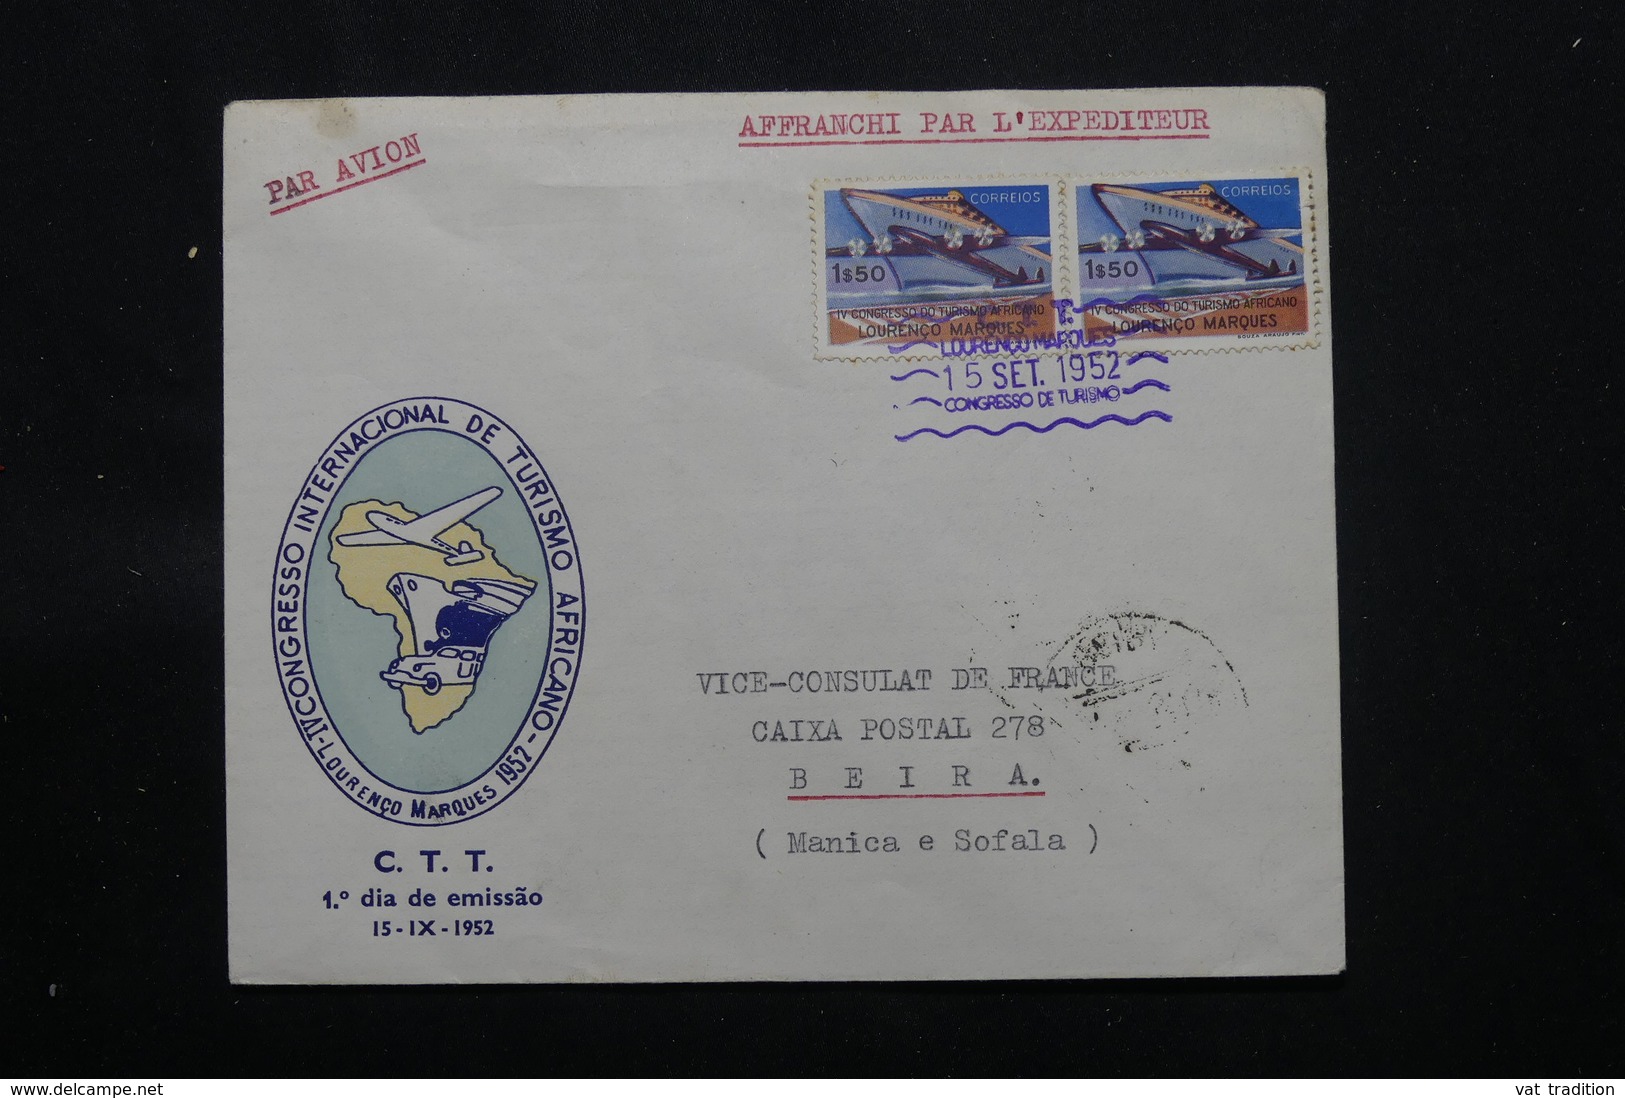 LOURENCO MARQUES - Enveloppe Pour Le Vice Consul De France à Beira En 1952, Affranchissement Plaisant - L 59742 - Lourenco Marques